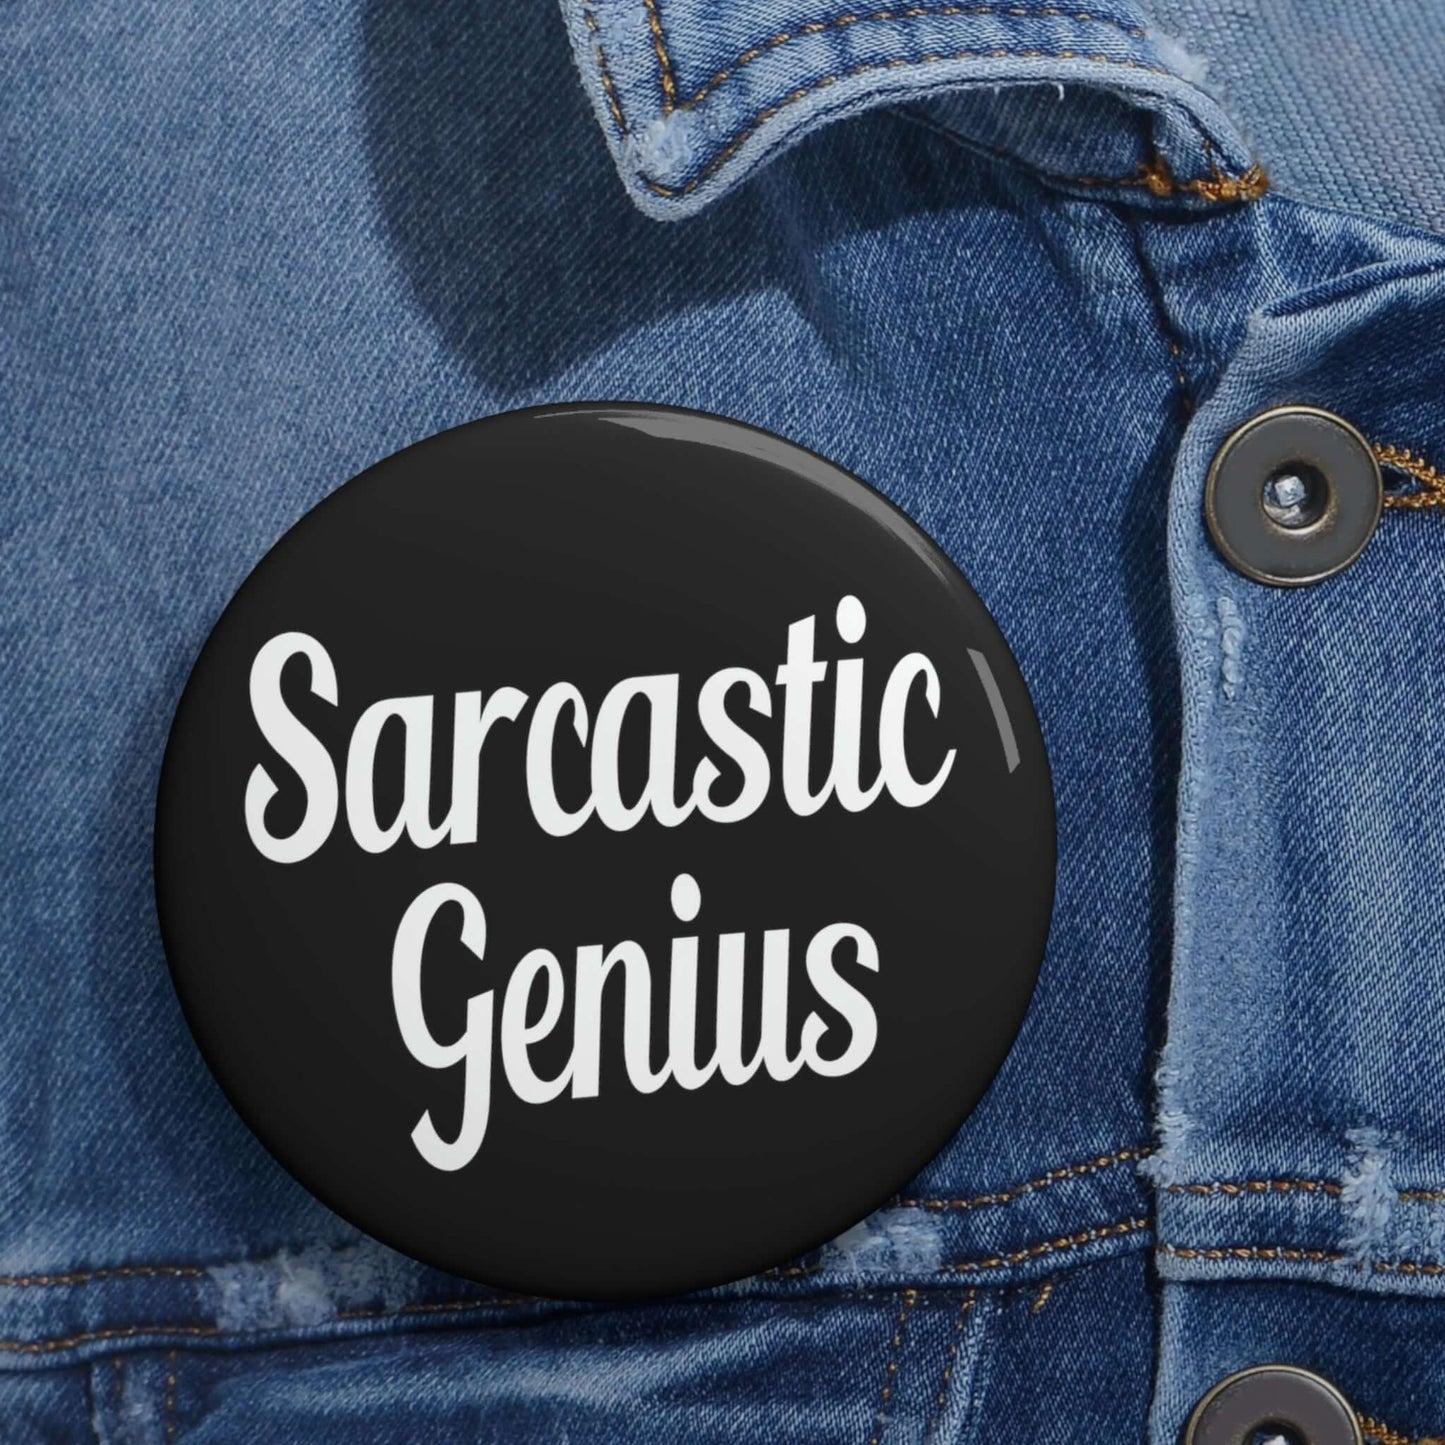 Sarcastic genius pinback button